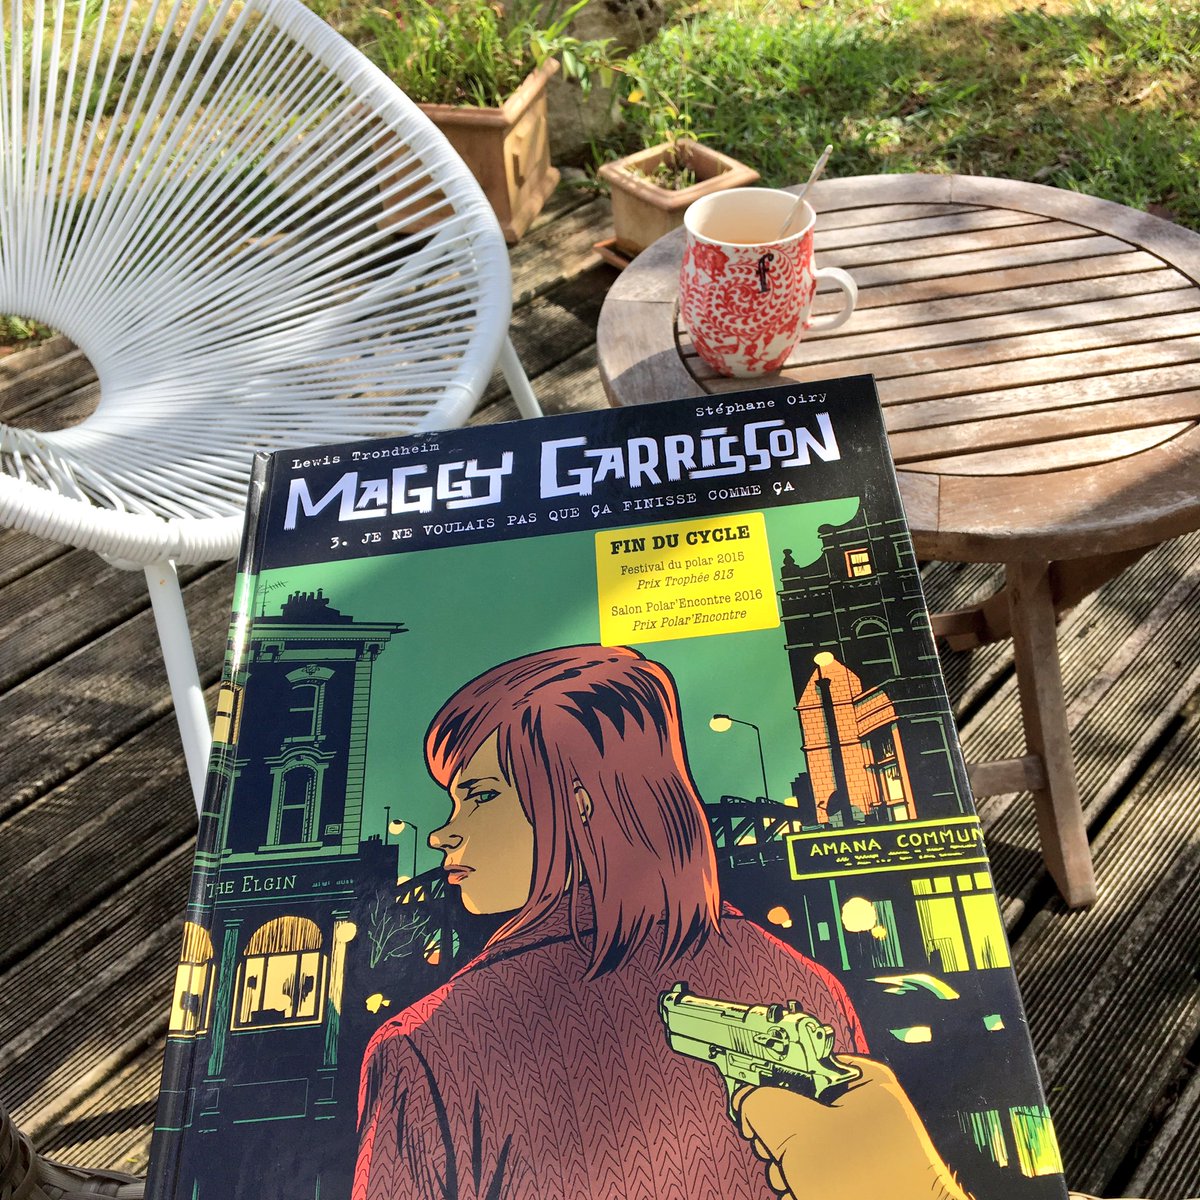 Petit bonheur du jour chez mon libraire 
Enfin la suite des aventures de #MaggyGarrisson by @lewistrondheim *^_^*